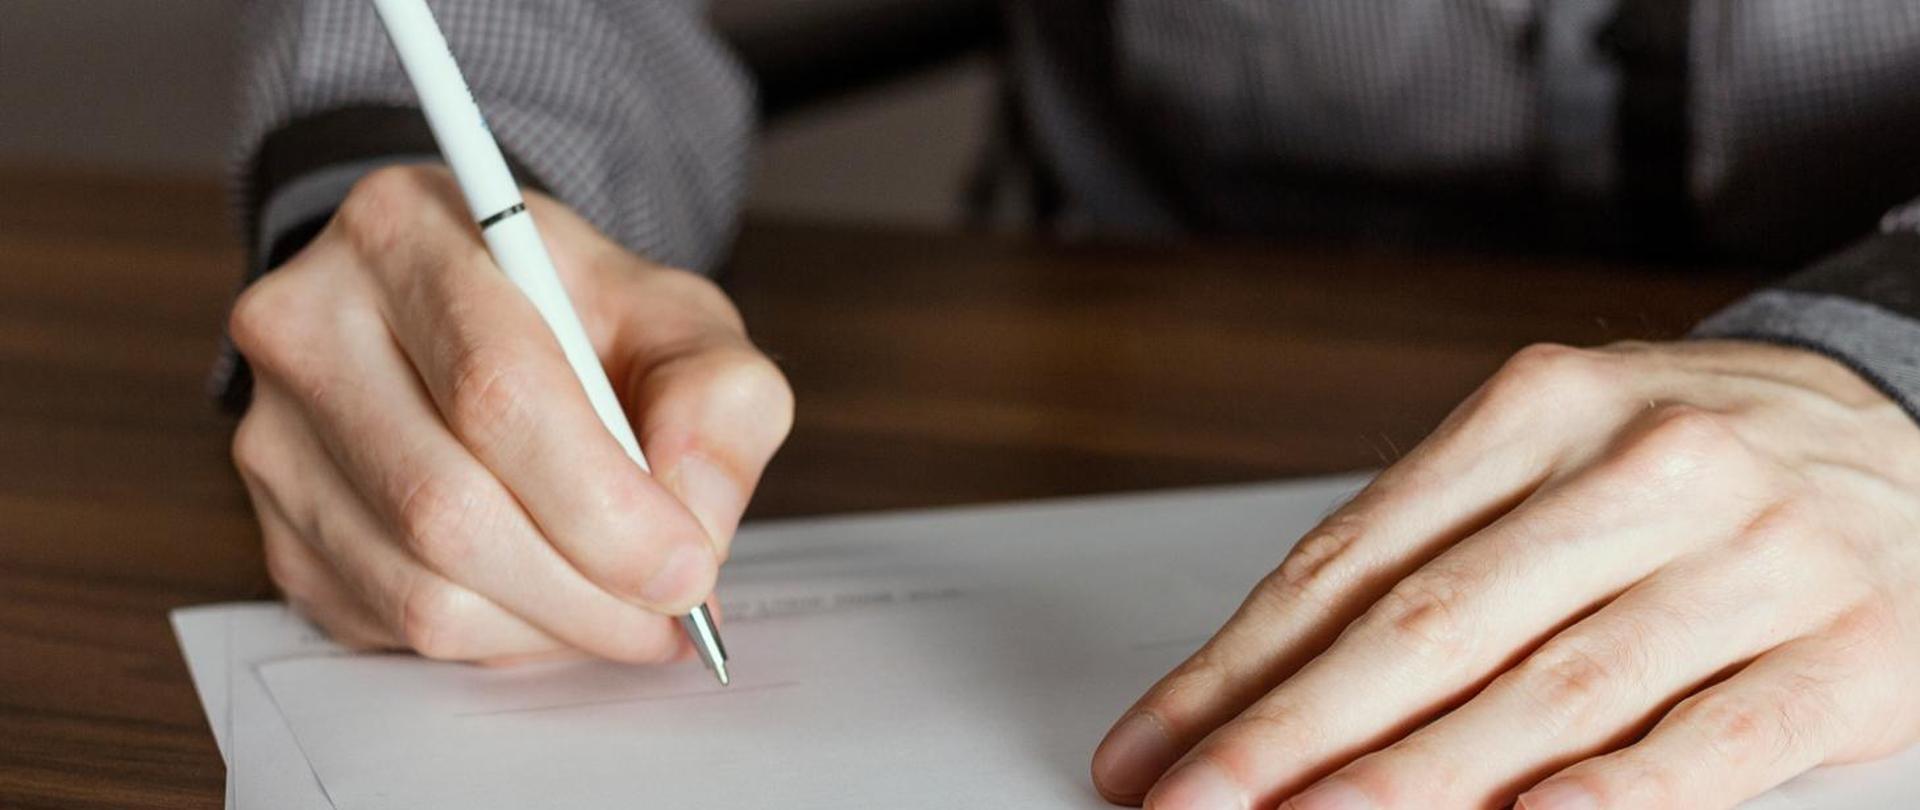 Na zdjęciu widać dłonie oparte o stolik. Jedna dłoń trzyma biały długopis i pisze po kartce papieru.